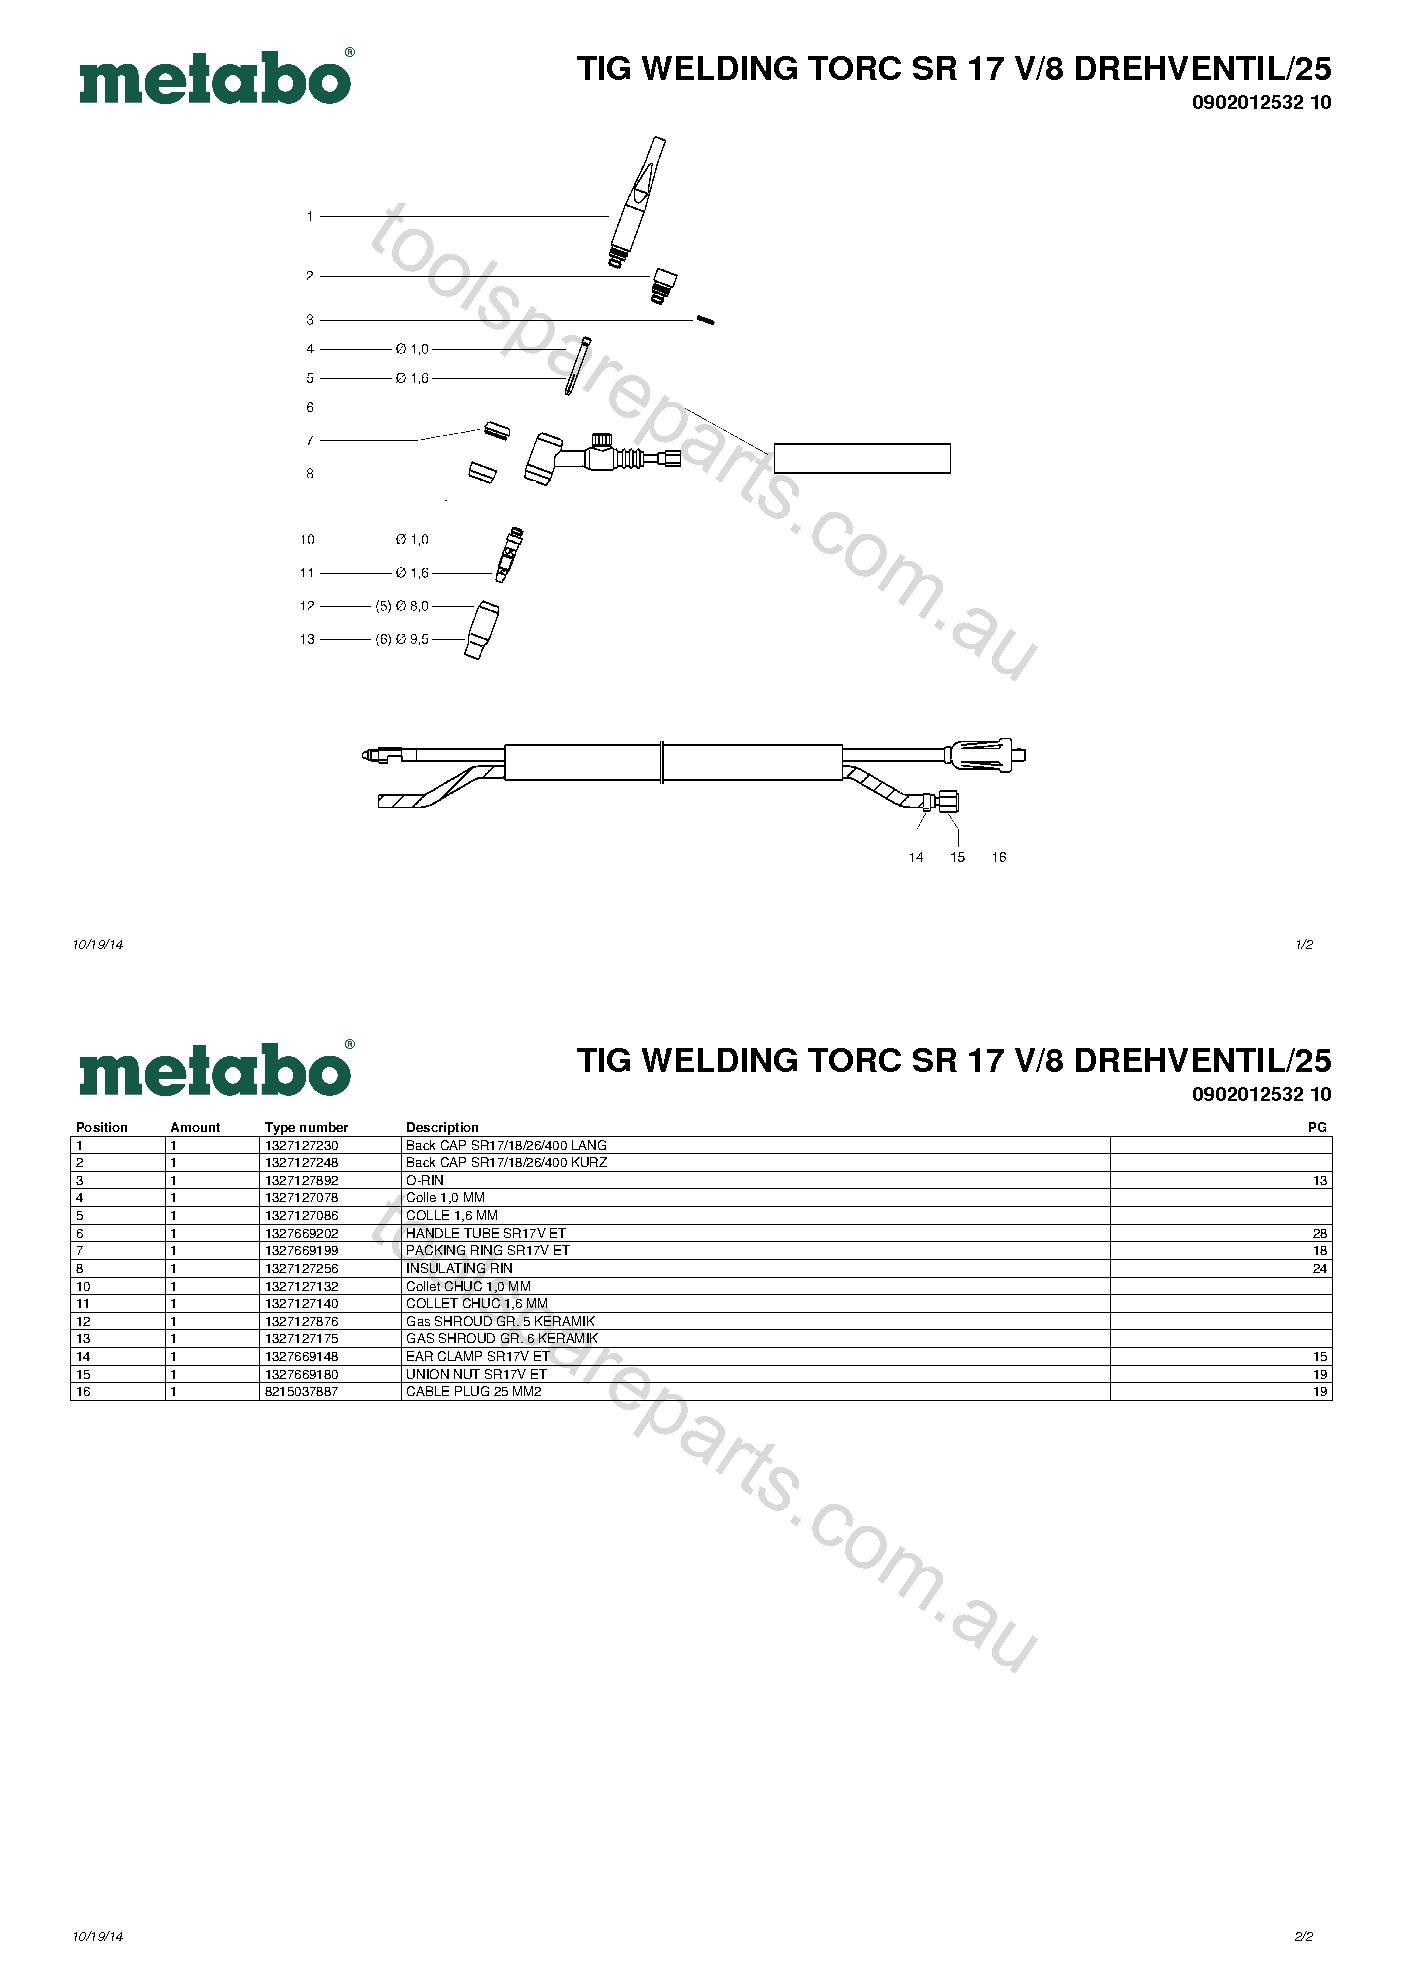 Metabo TIG WELDING TORC SR 17 V/8 DREHVENTIL/25 0902012532 10  Diagram 1